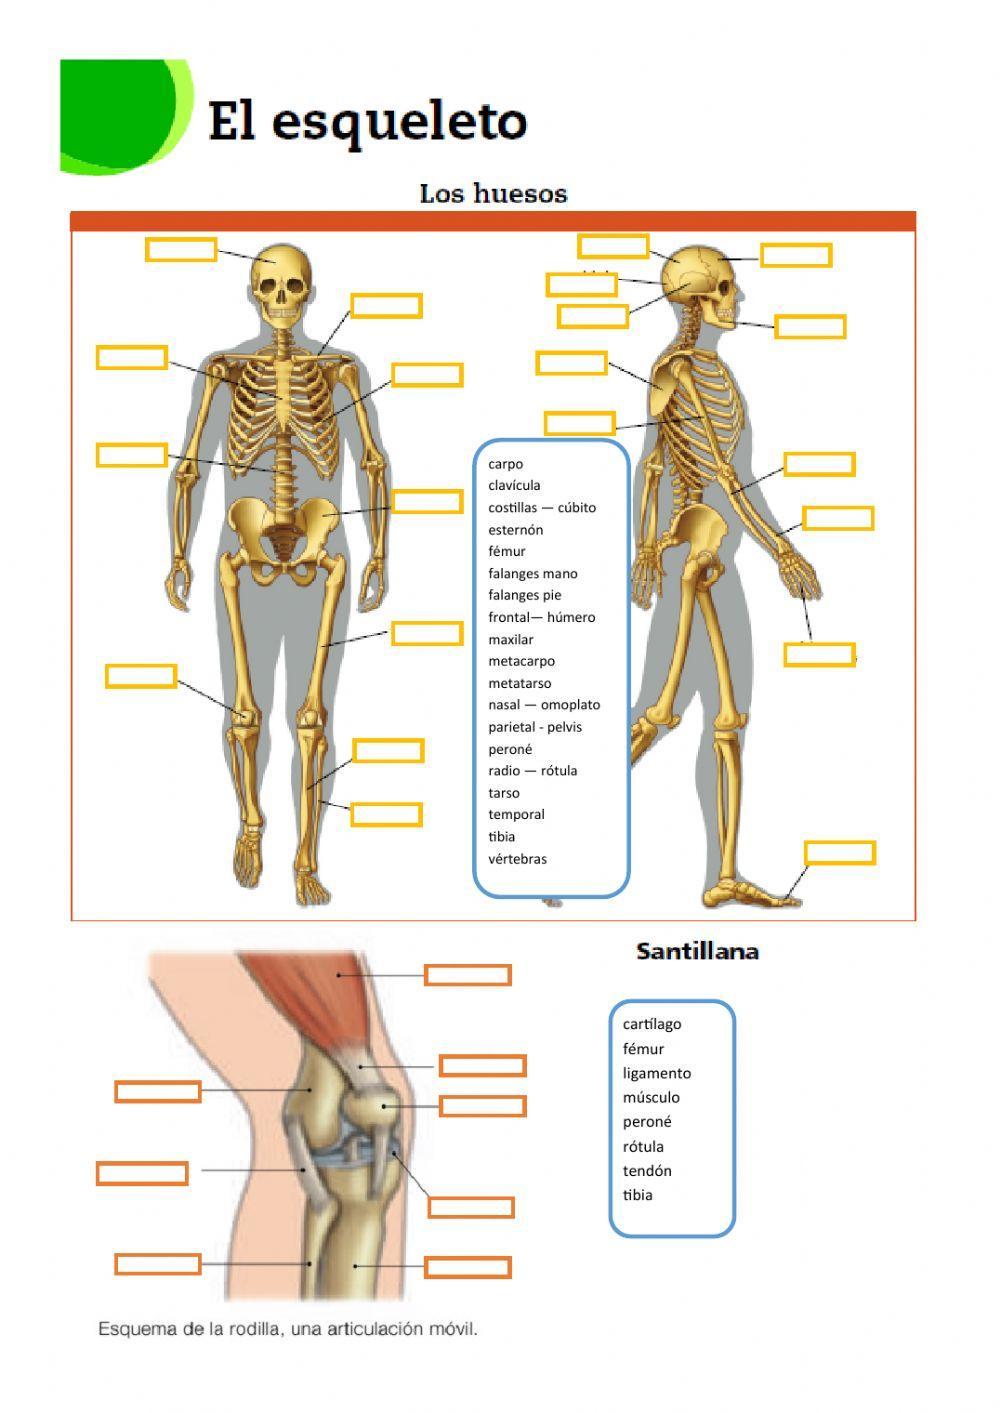 Esqueleto y articulación